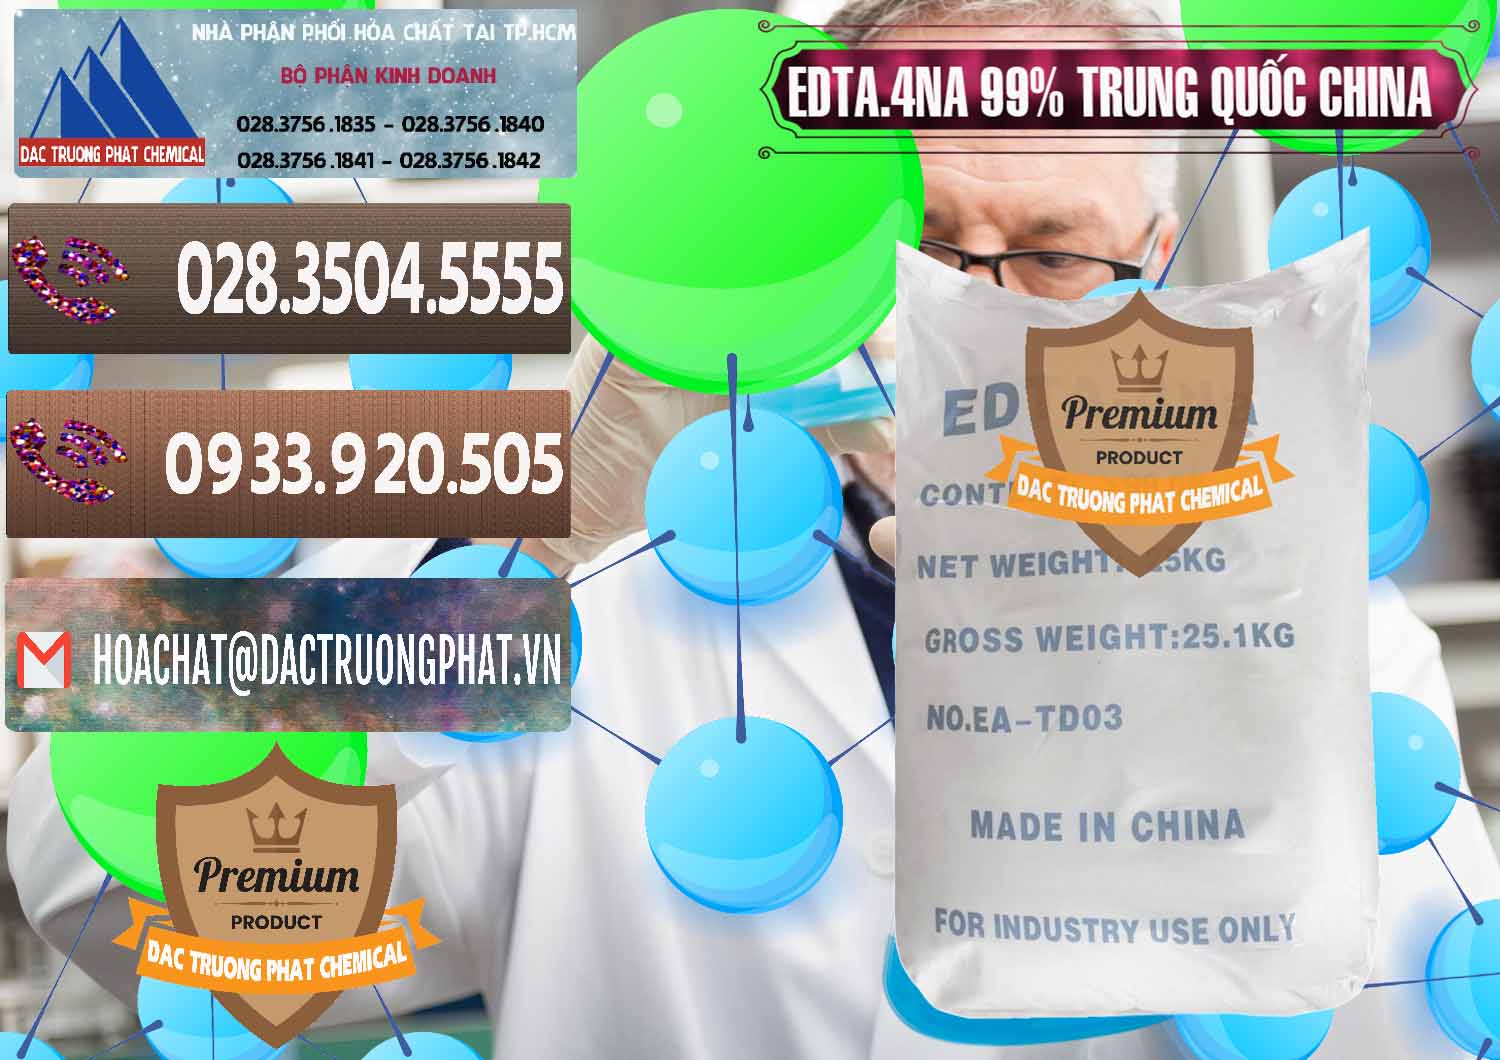 Công ty chuyên bán và cung cấp EDTA.4NA - EDTA Muối 99% Trung Quốc China - 0292 - Cung cấp - phân phối hóa chất tại TP.HCM - hoachatviet.net